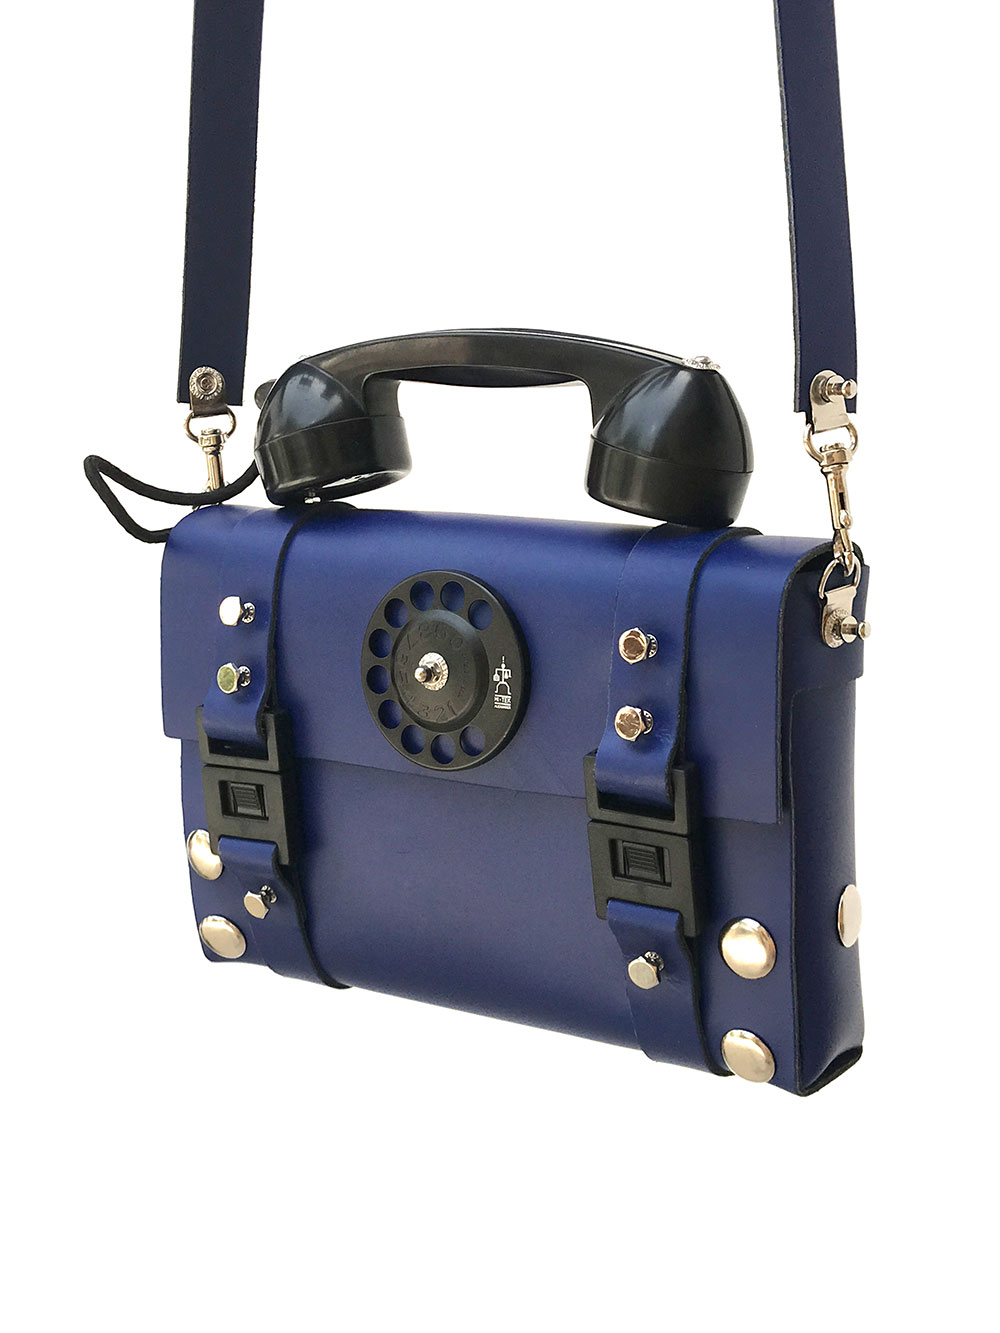 Unbox my dream vintage LV Cité bag from @Saucy Vault !! Best sourcing